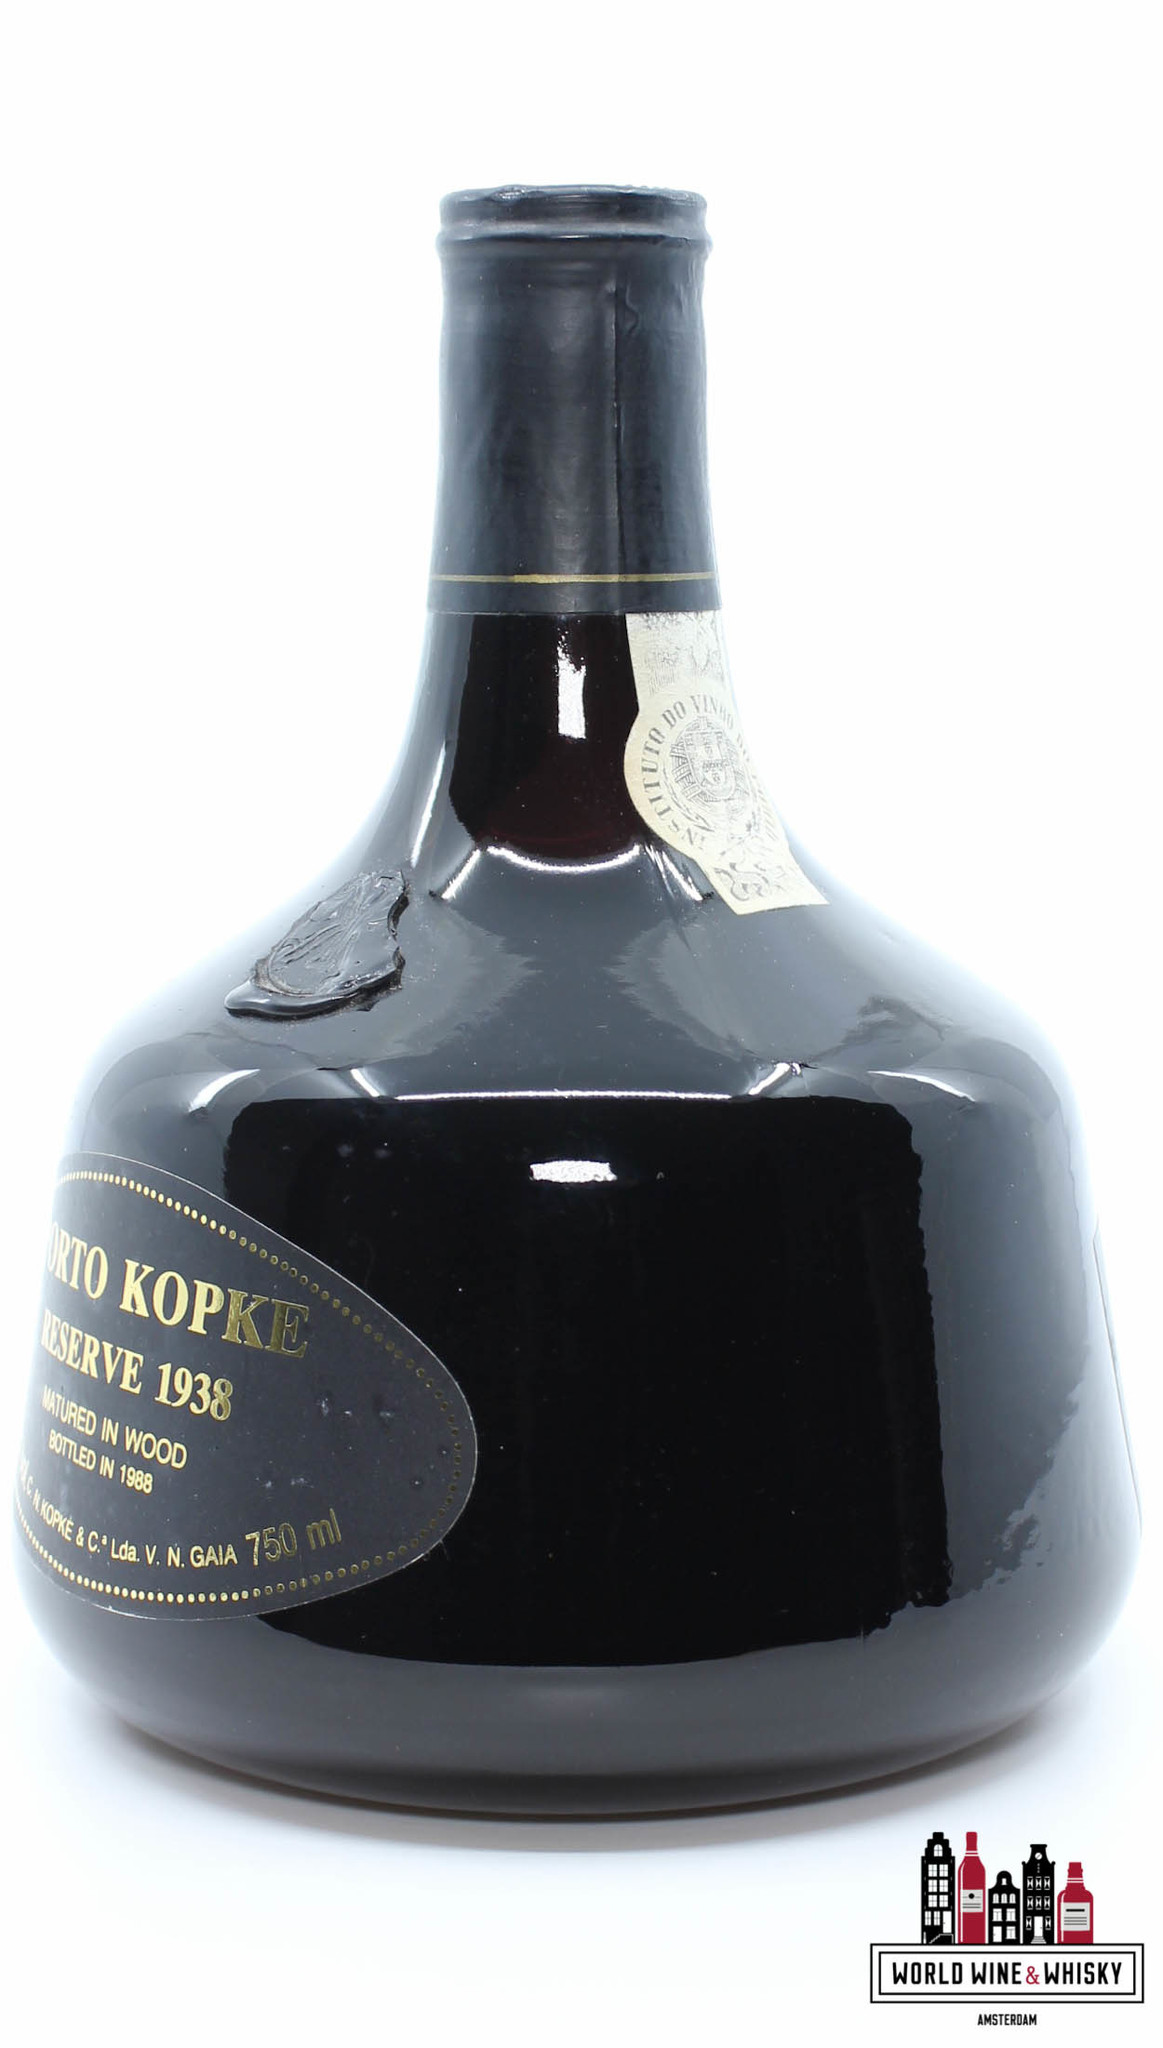 Kopke Porto Kopke - Reserve 1938 (Bottled in 1988) 19%